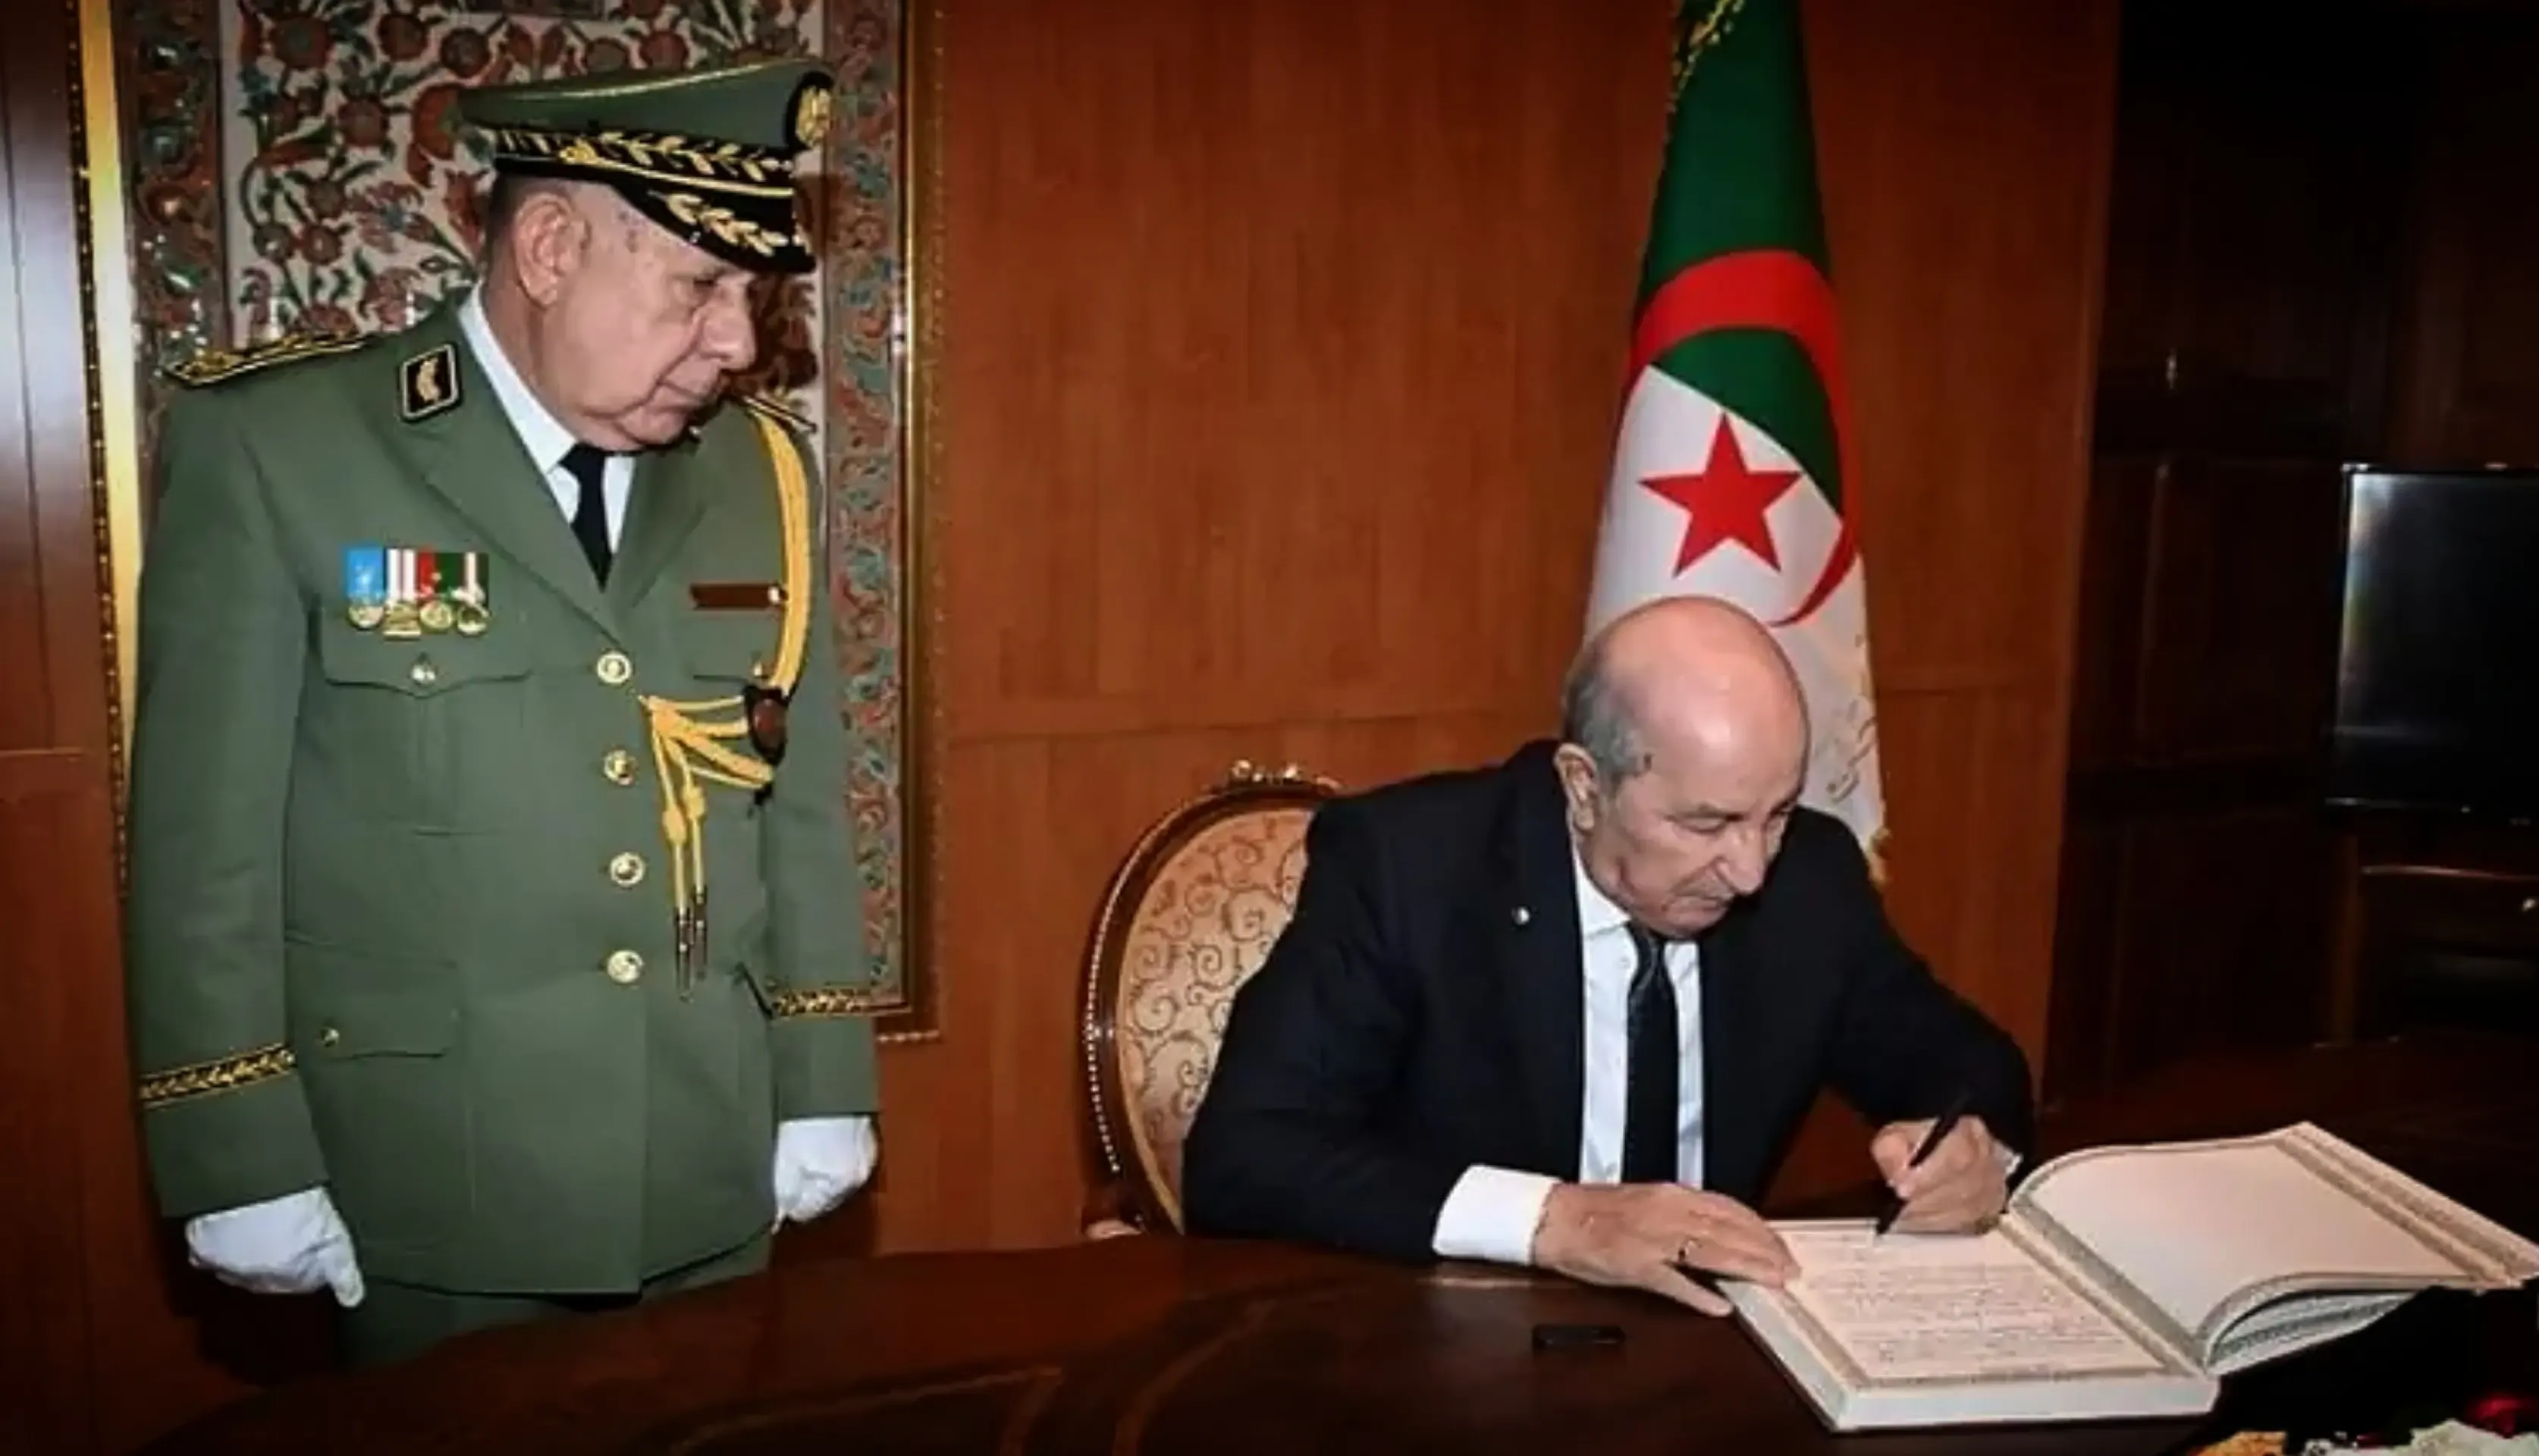 وزيرة خارجة ليبيا تكدب جنرالات الجزائر